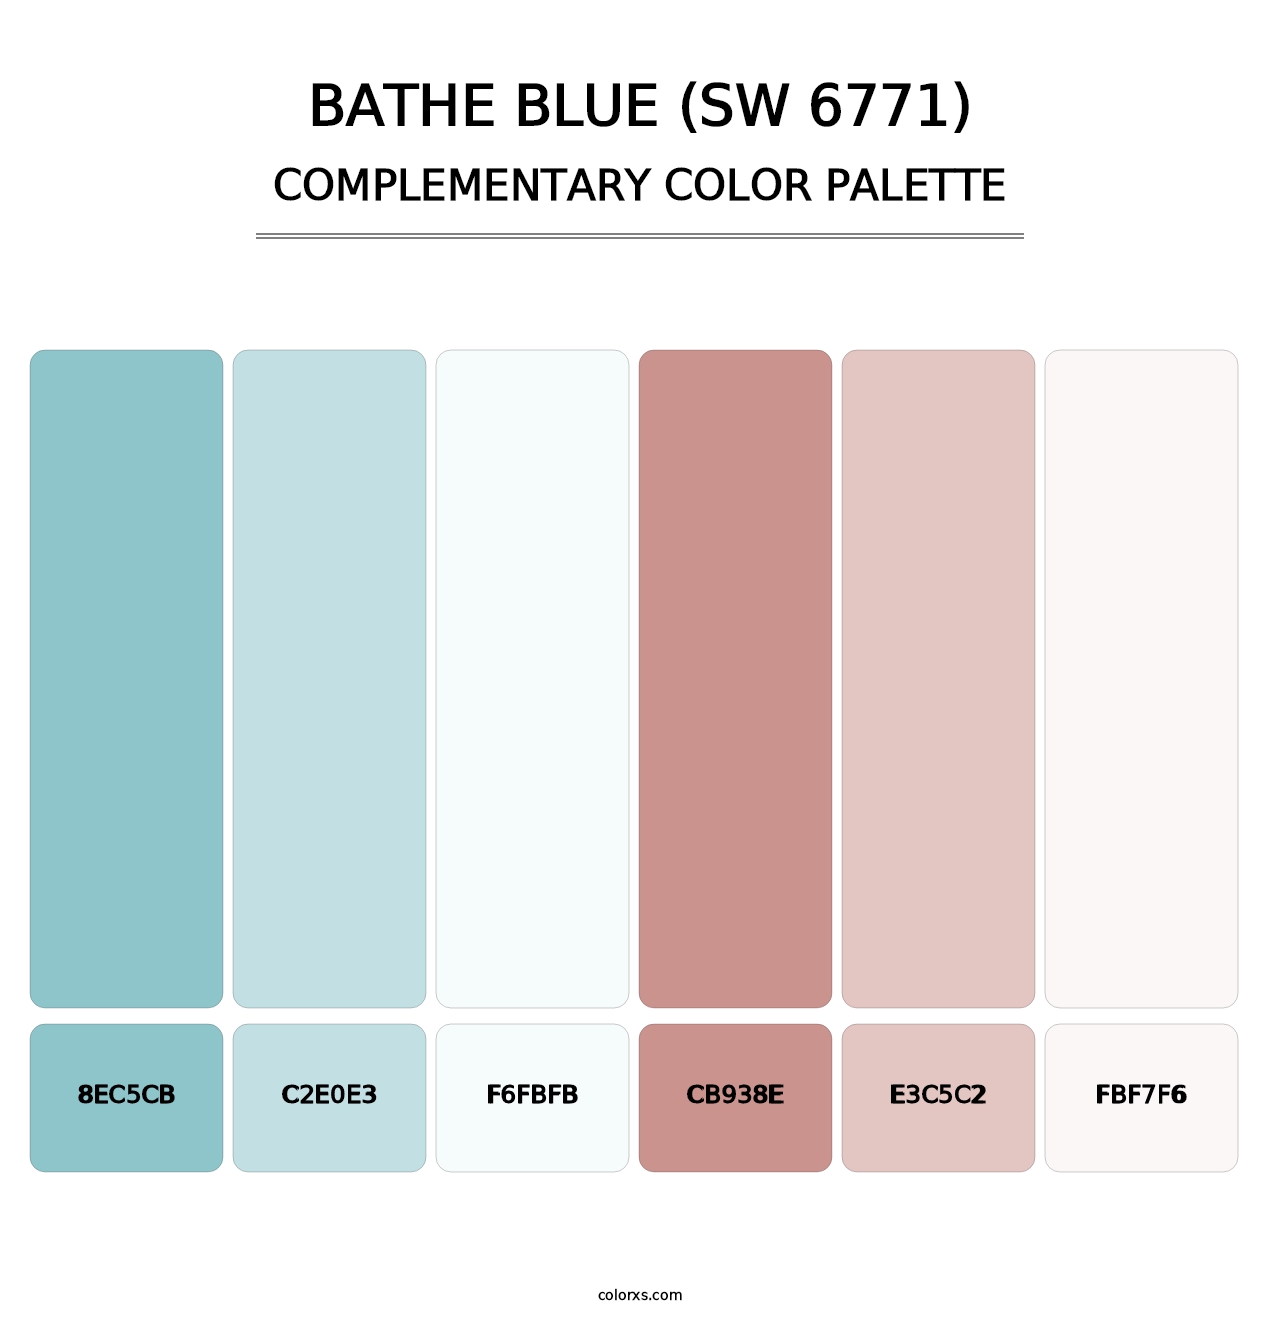 Bathe Blue (SW 6771) - Complementary Color Palette